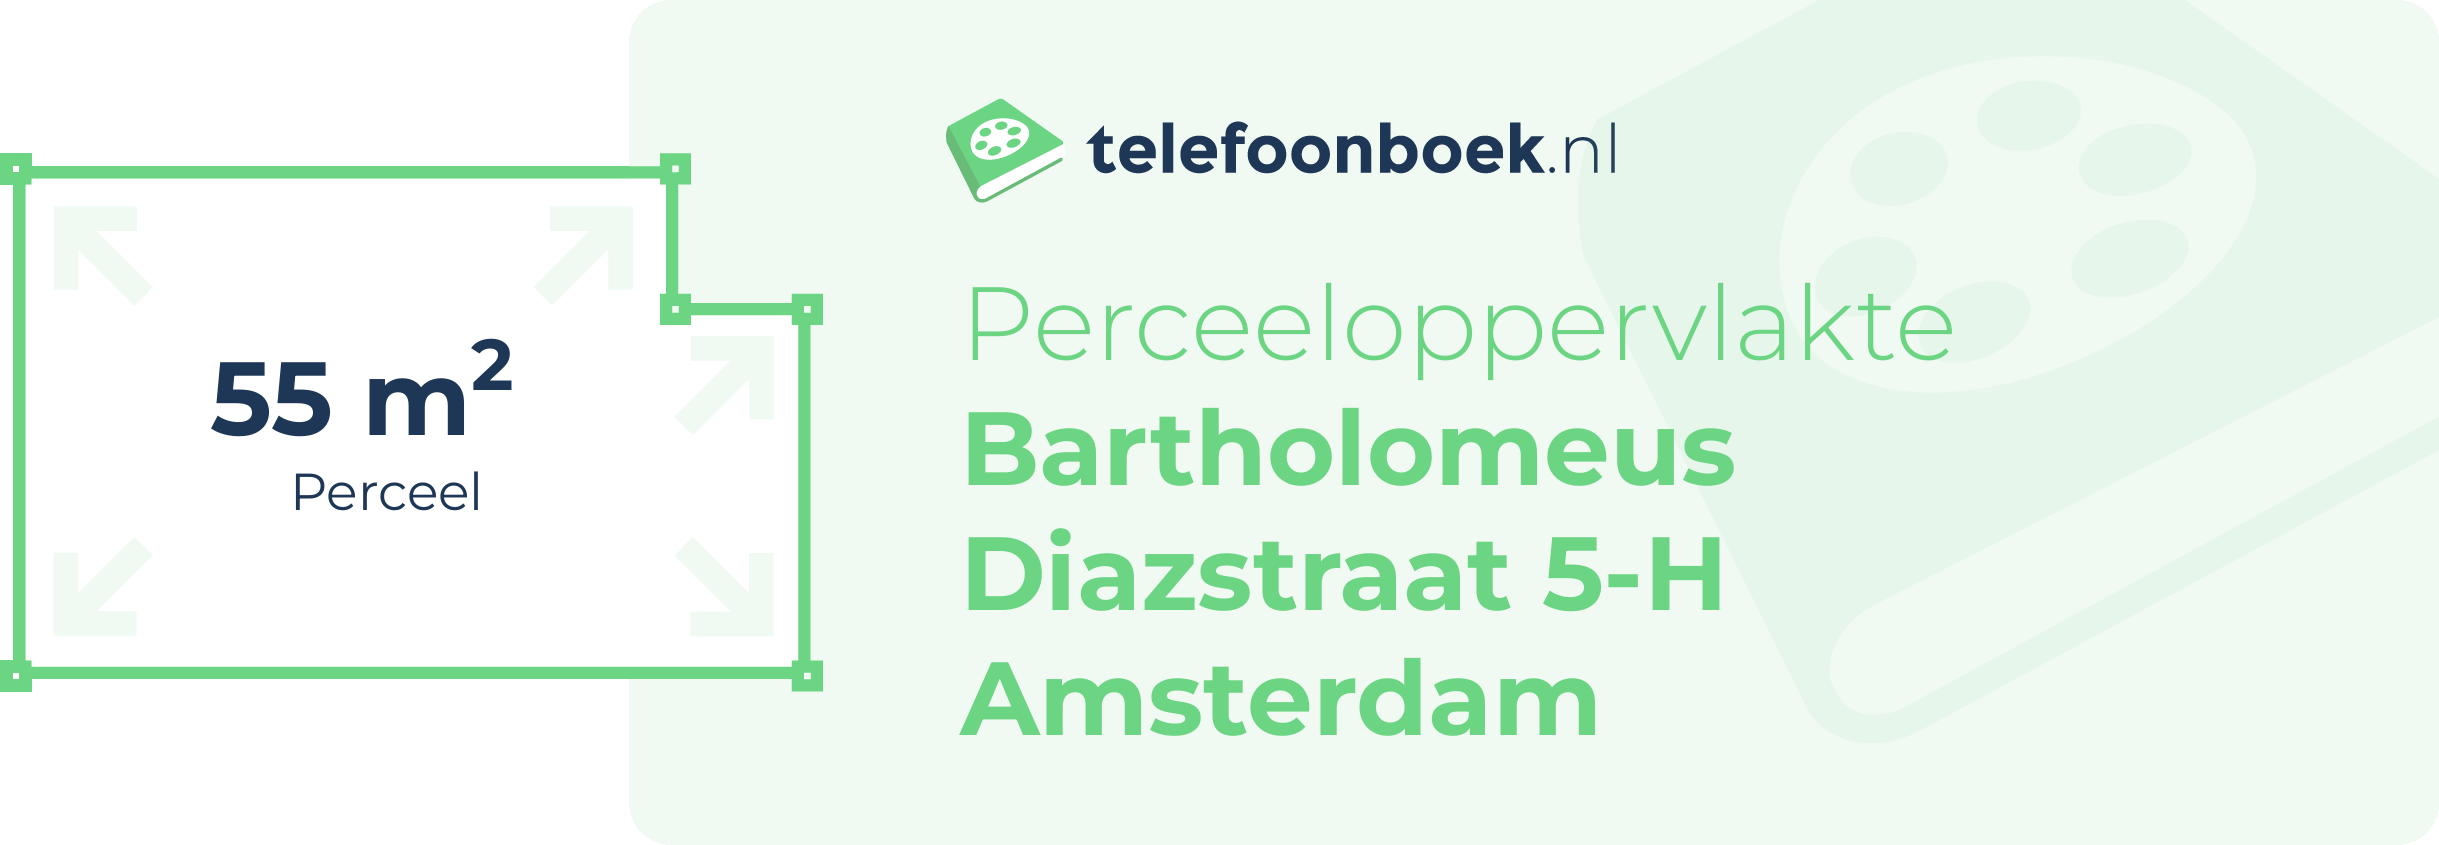 Perceeloppervlakte Bartholomeus Diazstraat 5-H Amsterdam